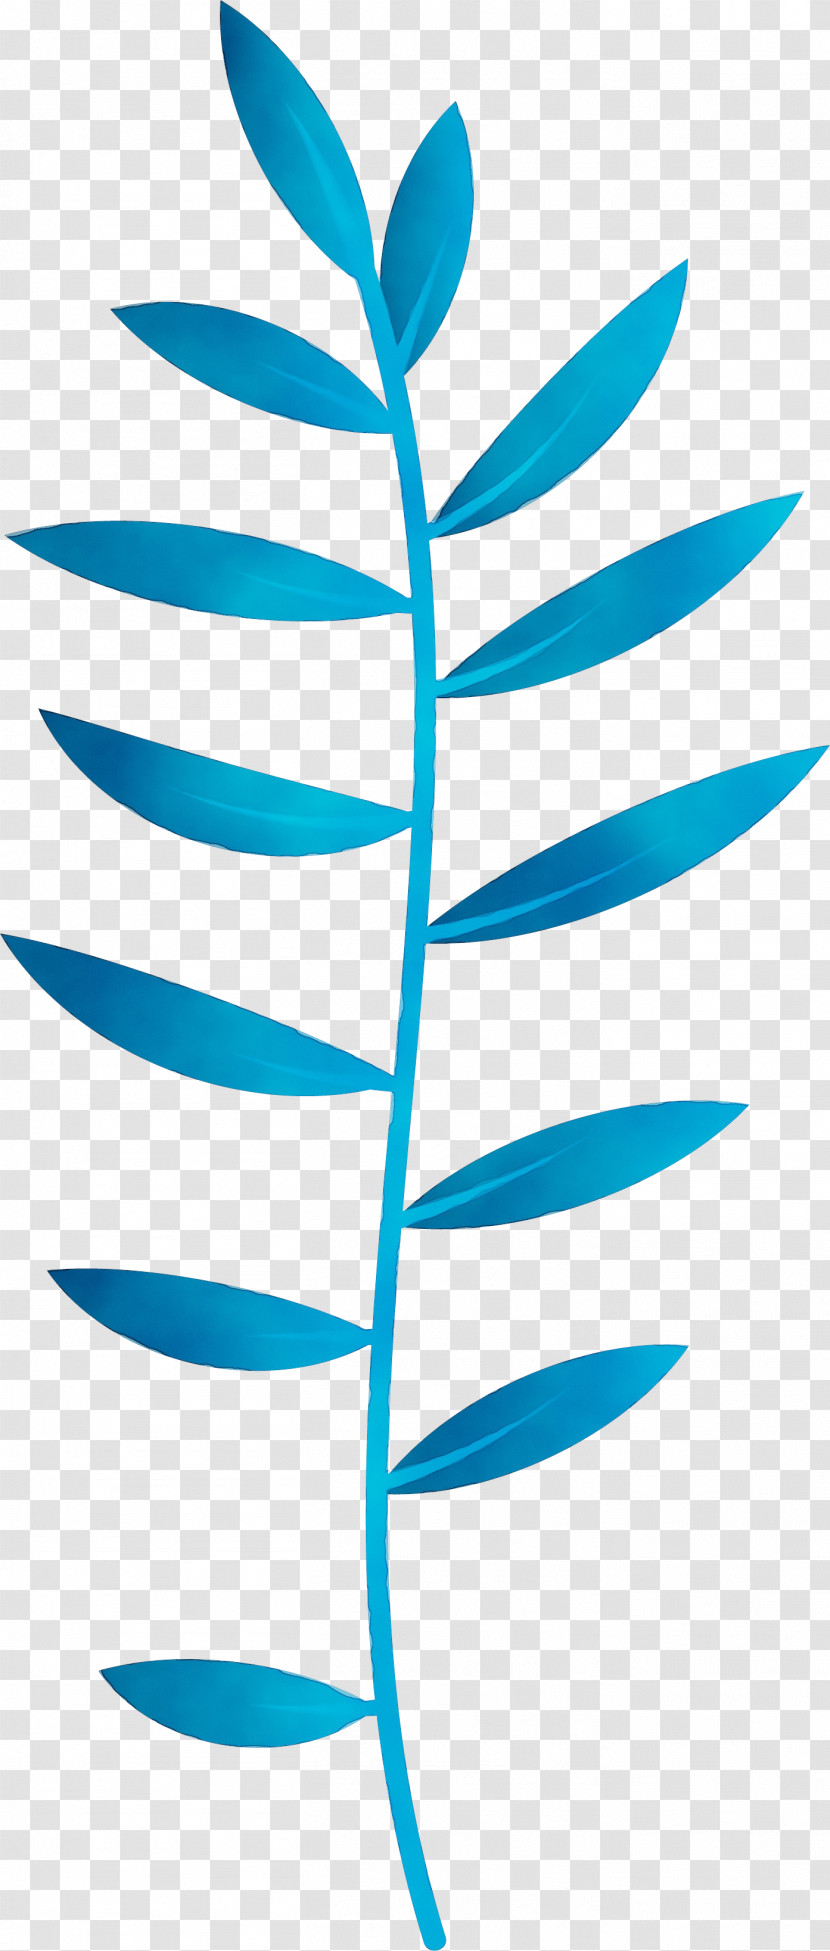 Plant Stem Leaf Angle Line Teal Transparent PNG